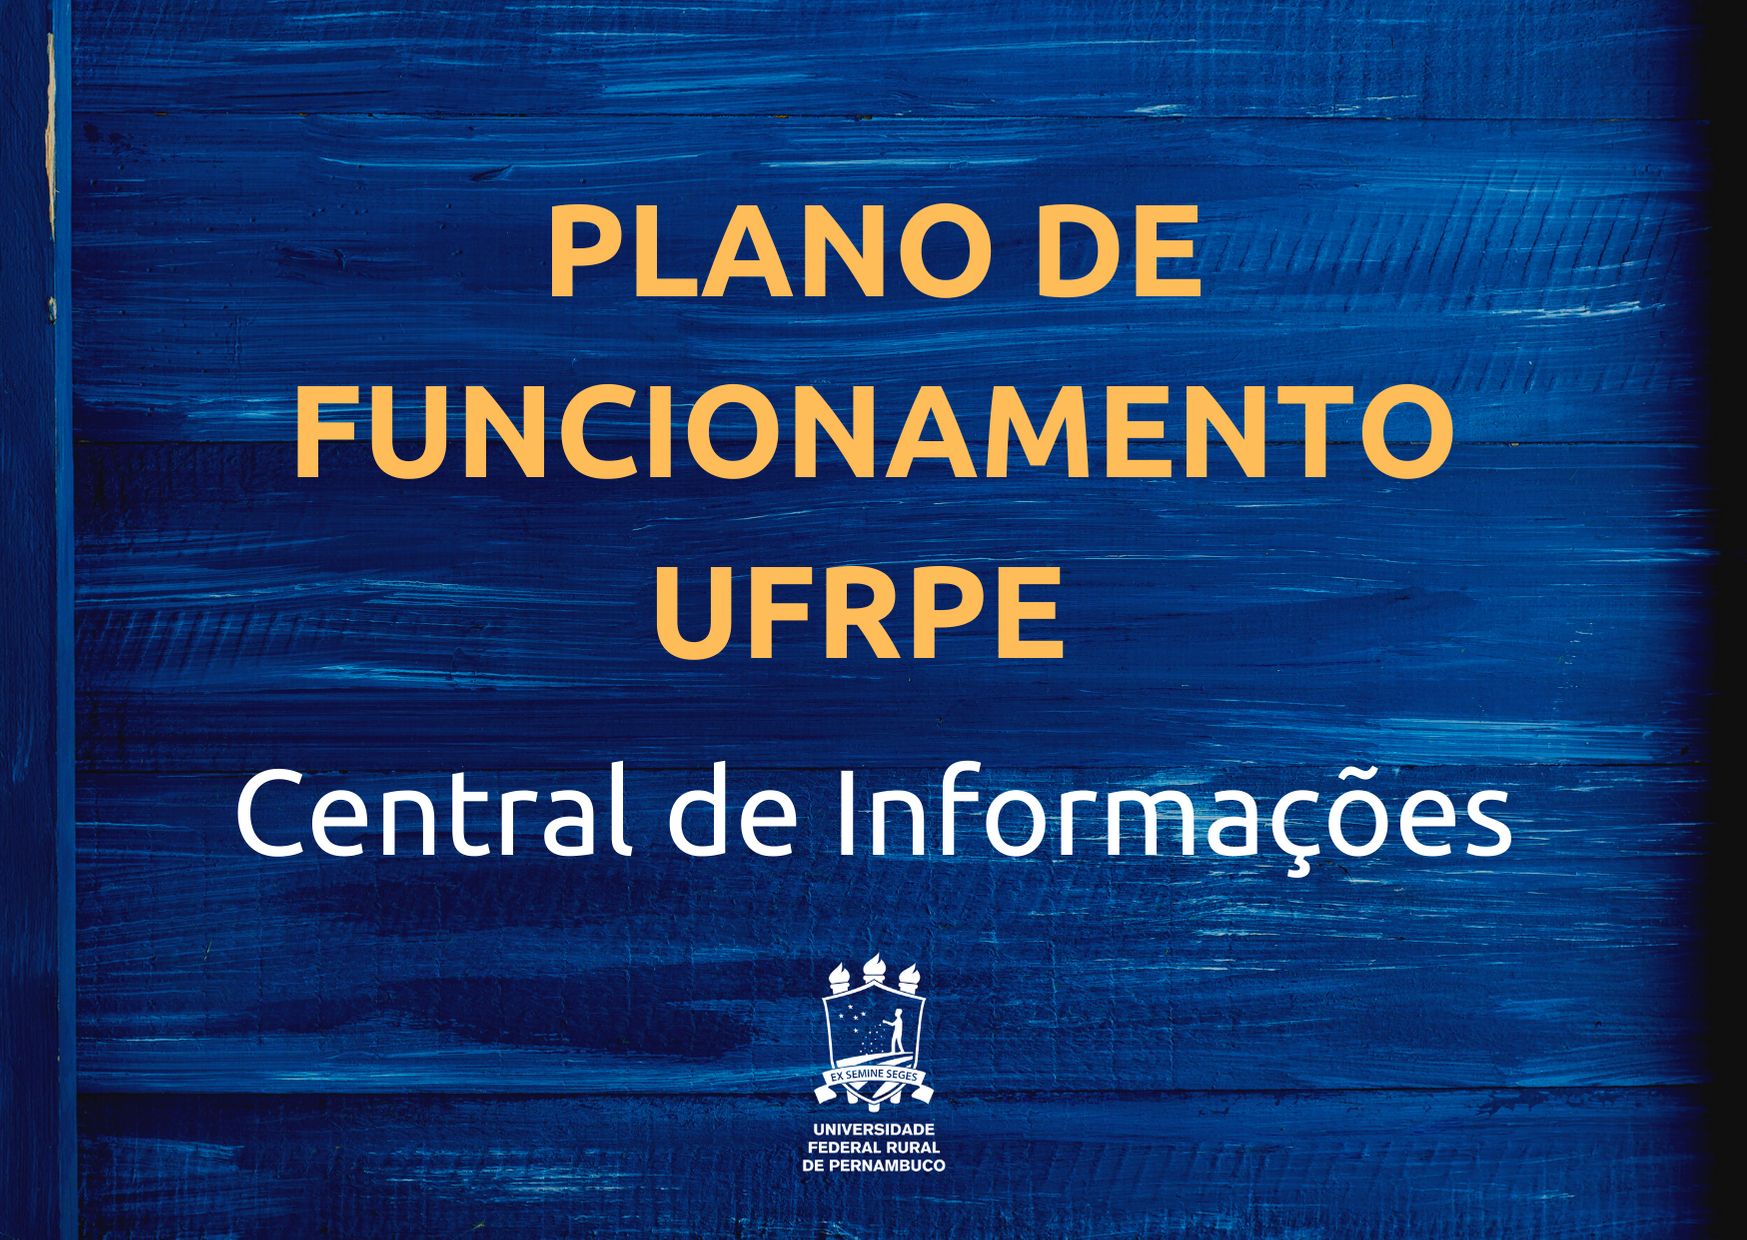 imagem com texto Plano de Funcionamento UFRPE Central de Informações